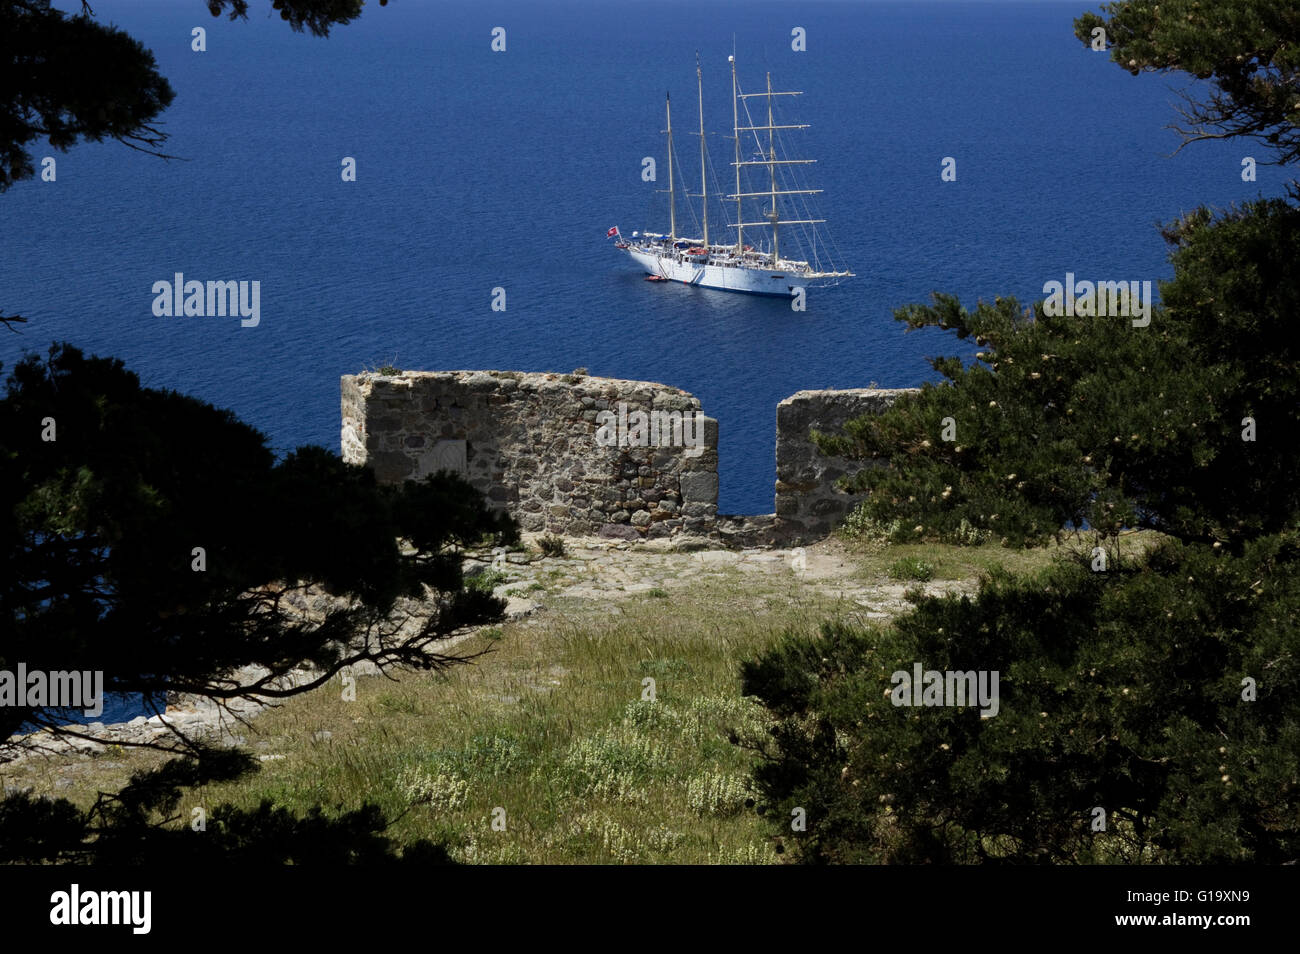 Lussuoso Star Clipper nave a vela nel mare Egeo, ancorata al di fuori Mirina del porto. Vista dal castello. Limnos Grecia Foto Stock